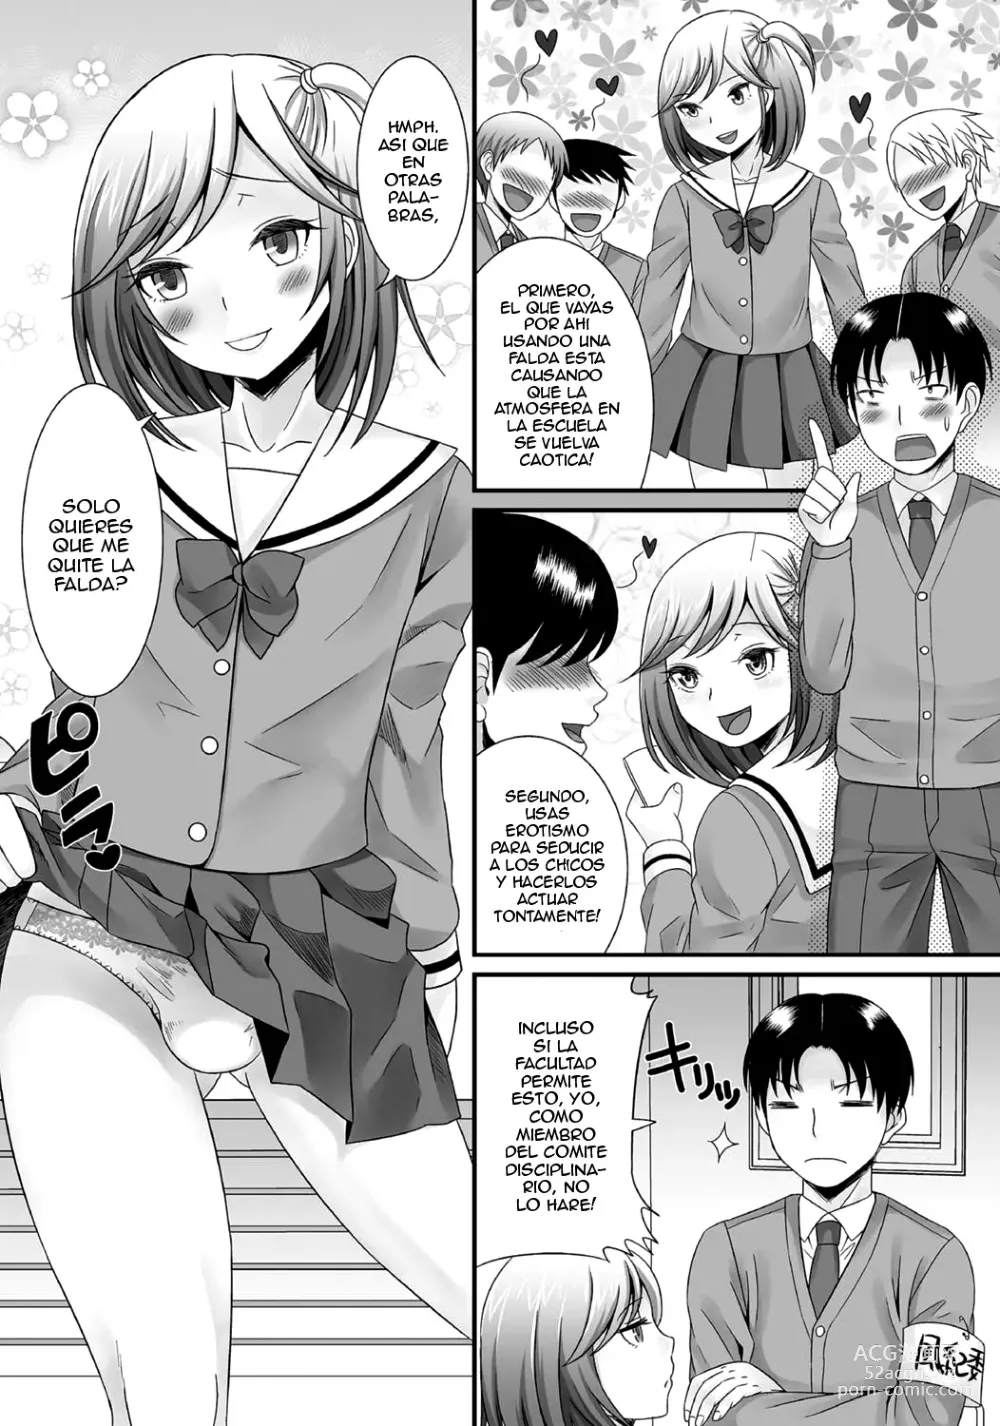 Page 26 of manga Gekkan Web Otoko no Ko-llection! S Vol. 06